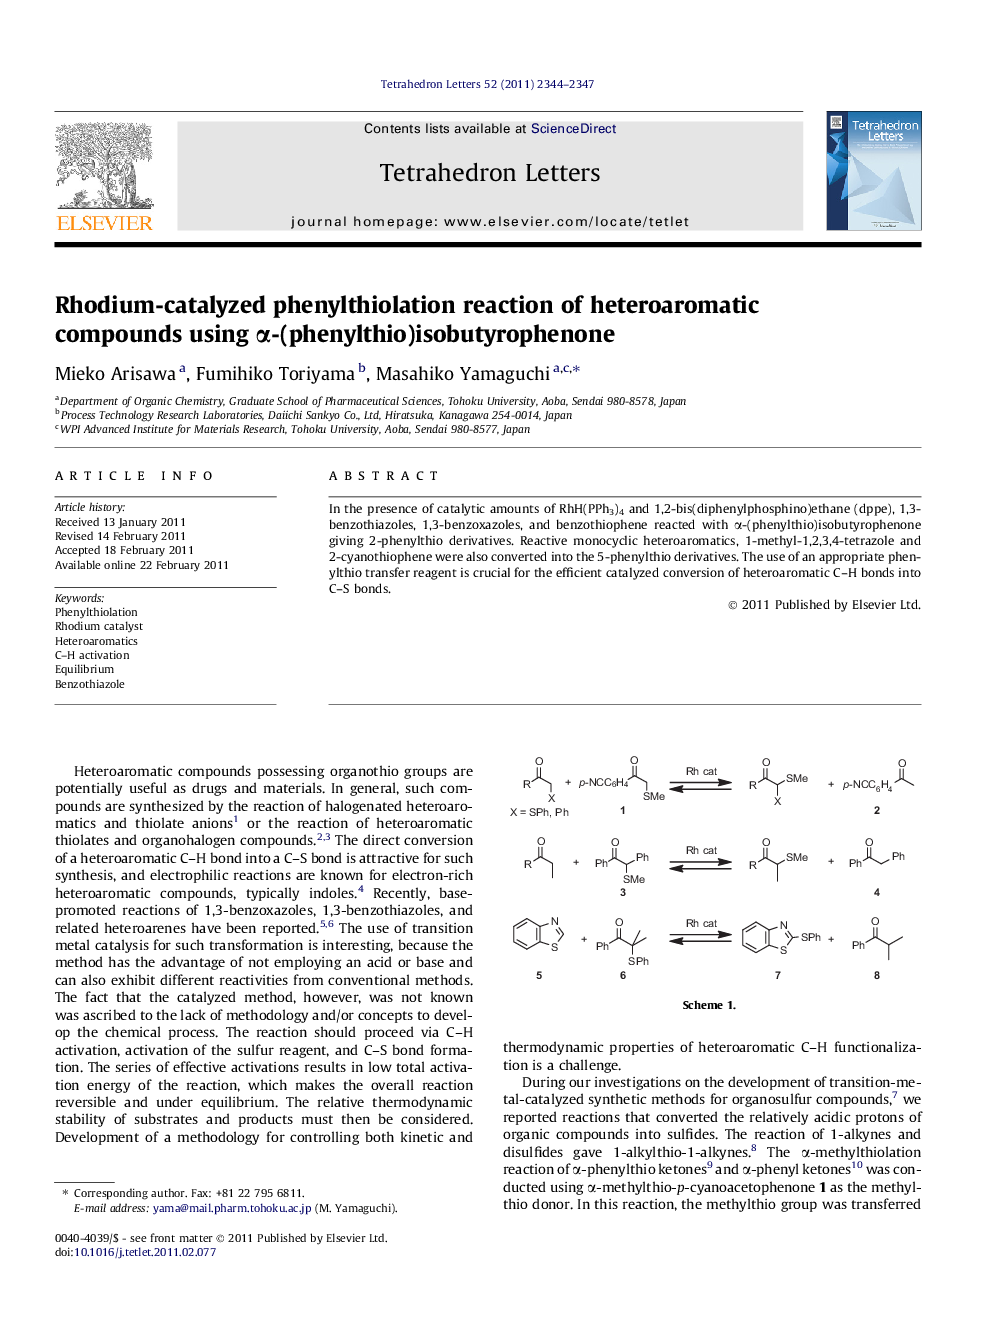 Rhodium-catalyzed phenylthiolation reaction of heteroaromatic compounds using Î±-(phenylthio)isobutyrophenone